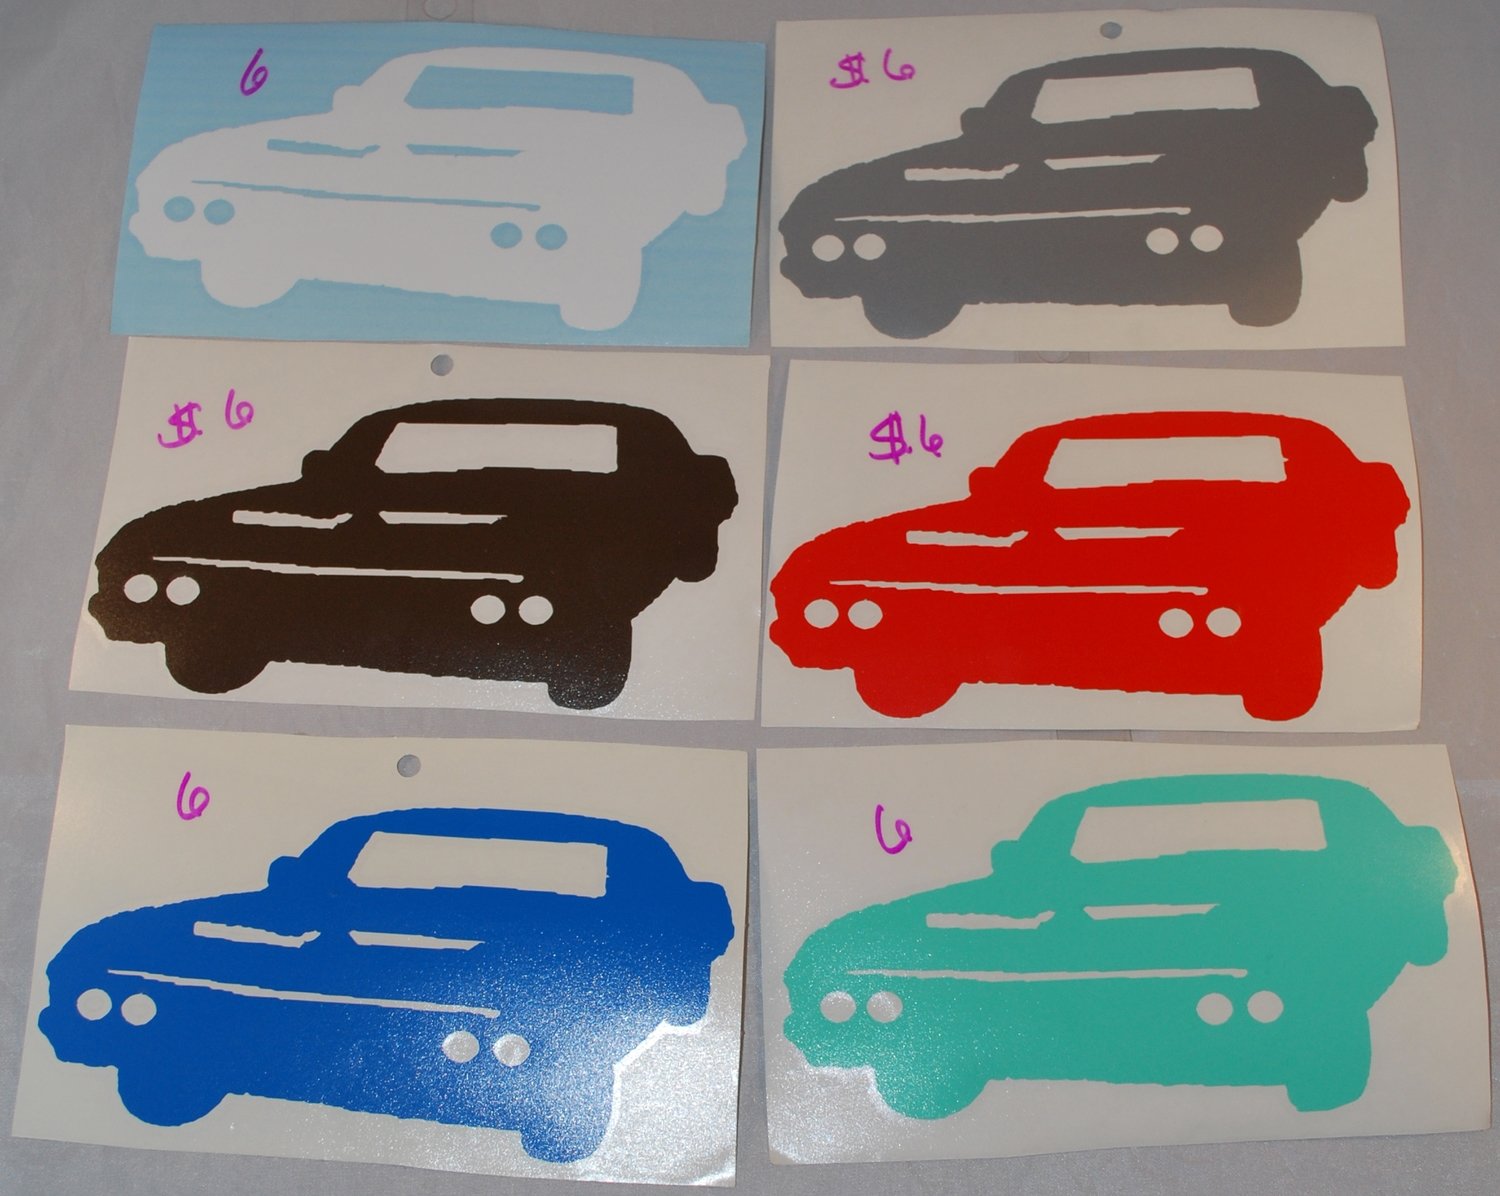 1967 Chevy Impala - Baby Vinyl Sticker